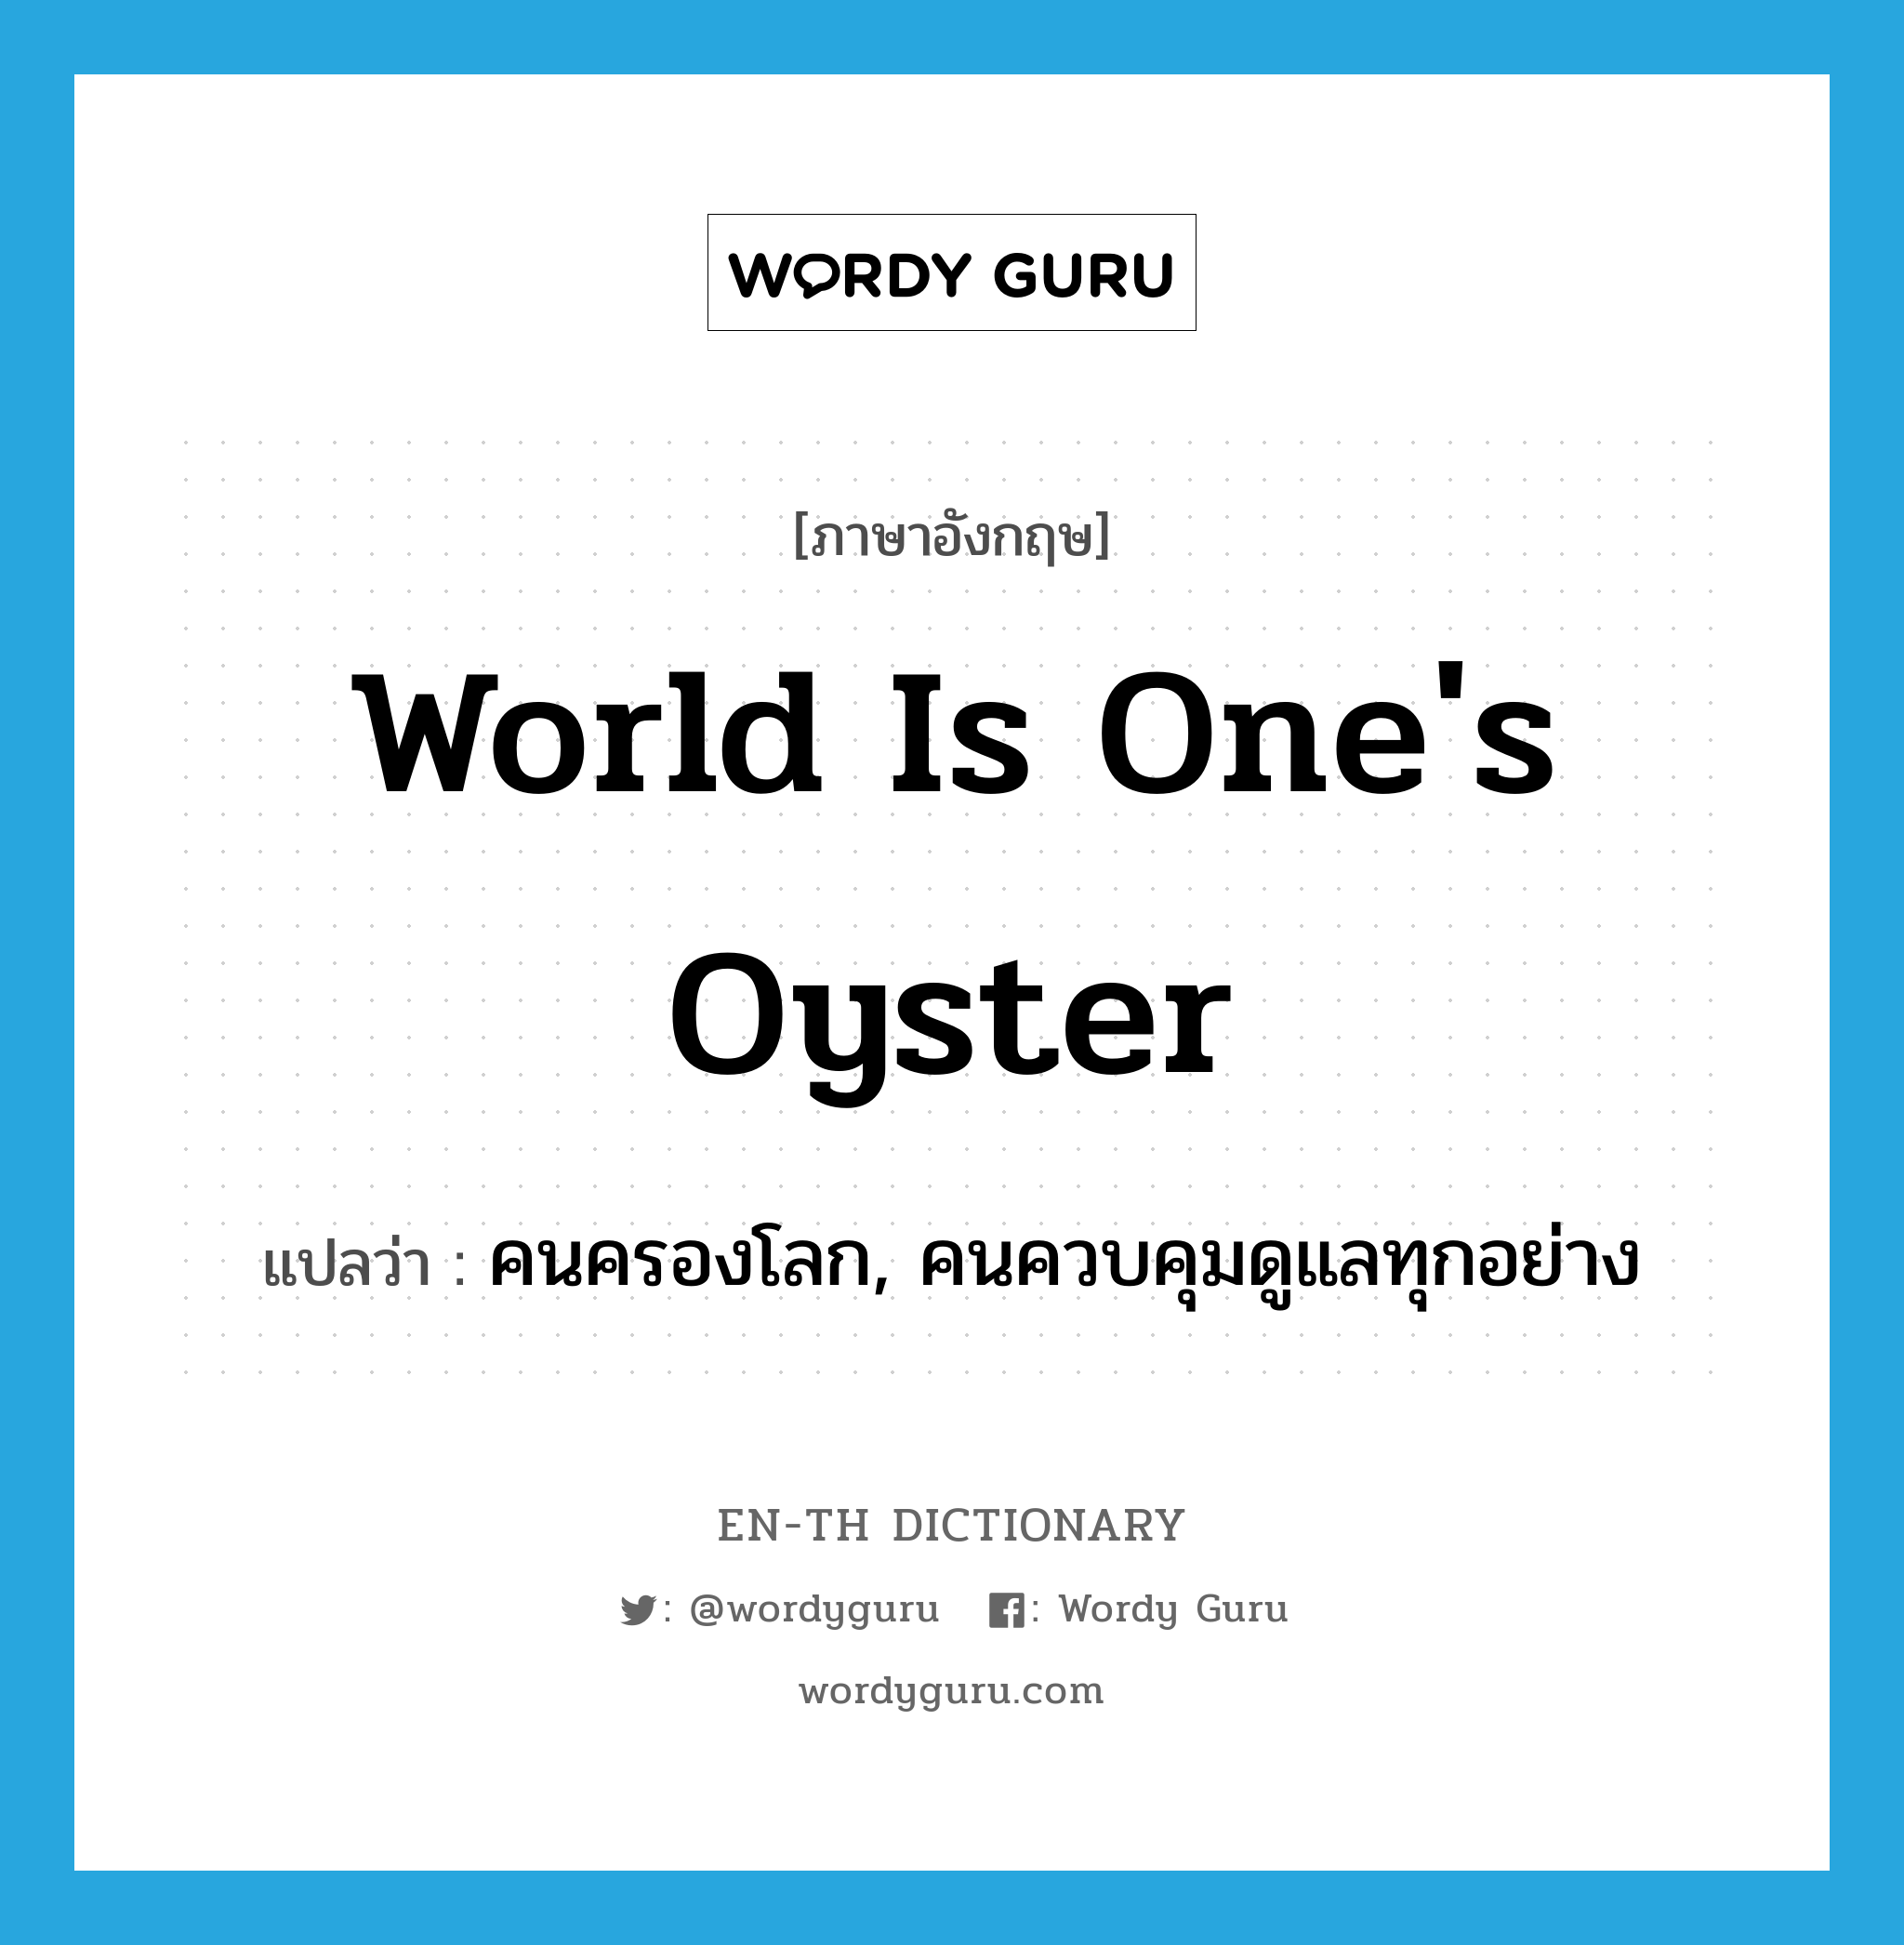 คนครองโลก, คนควบคุมดูแลทุกอย่าง ภาษาอังกฤษ?, คำศัพท์ภาษาอังกฤษ คนครองโลก, คนควบคุมดูแลทุกอย่าง แปลว่า world is one's oyster ประเภท SL หมวด SL